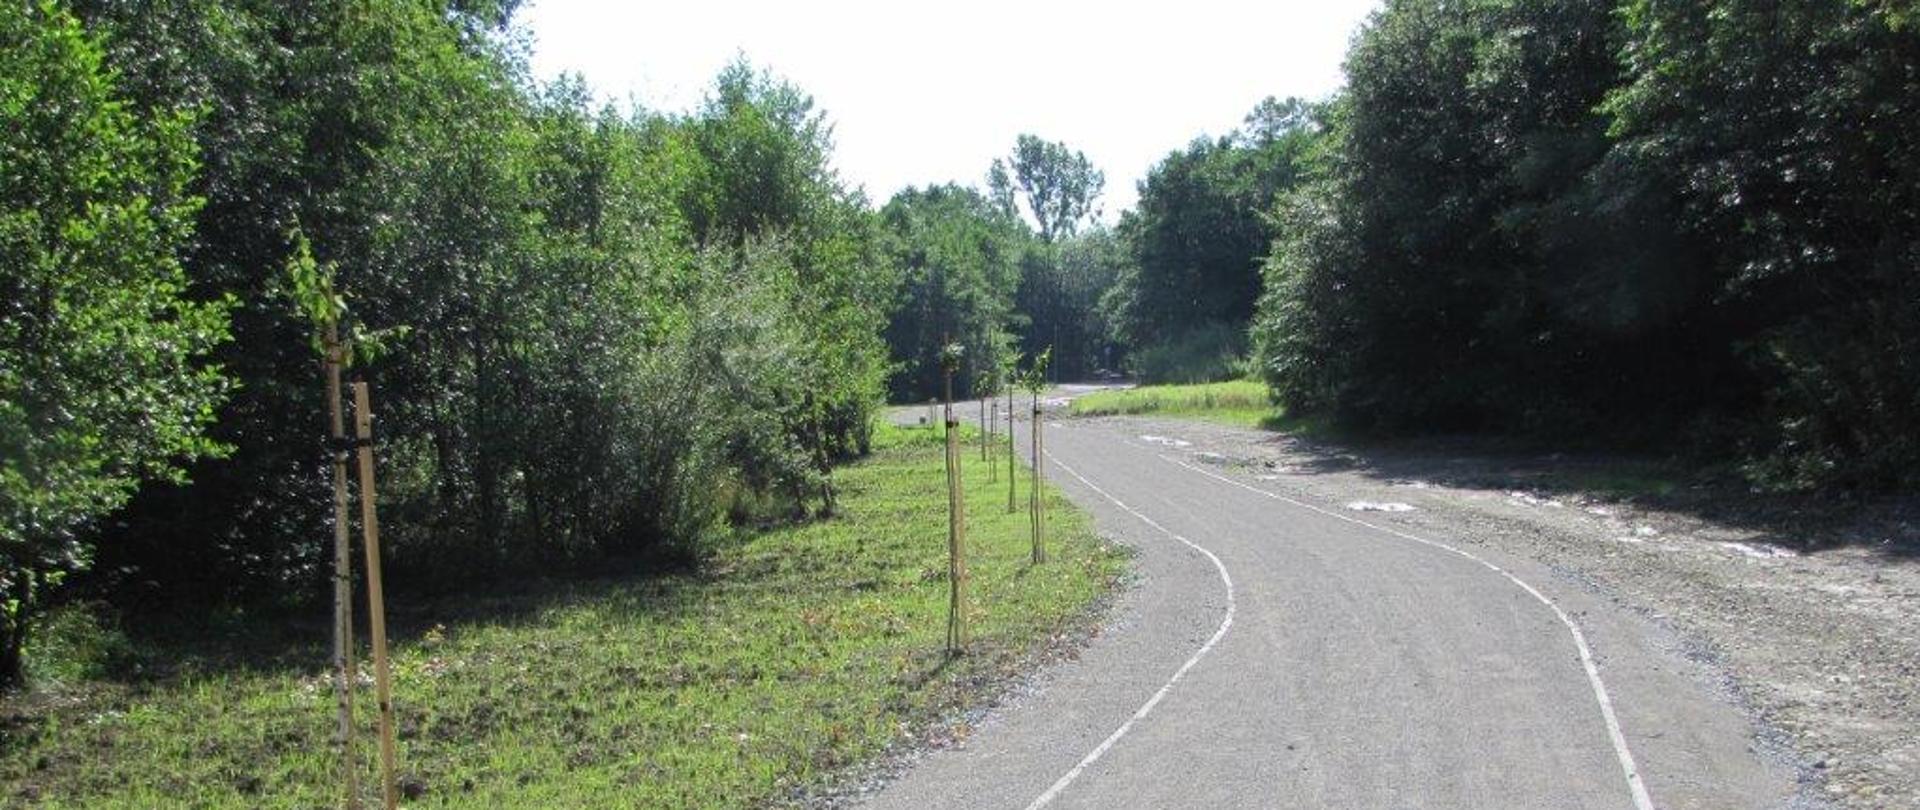 Zdjęcie ścieżki dydaktycznej po zakończeniu realizacji projektu. Na środku zdjęcia widoczna jest ścieżka, po lewej i prawej strony ścieżki widoczne są drzewa i pobocze.